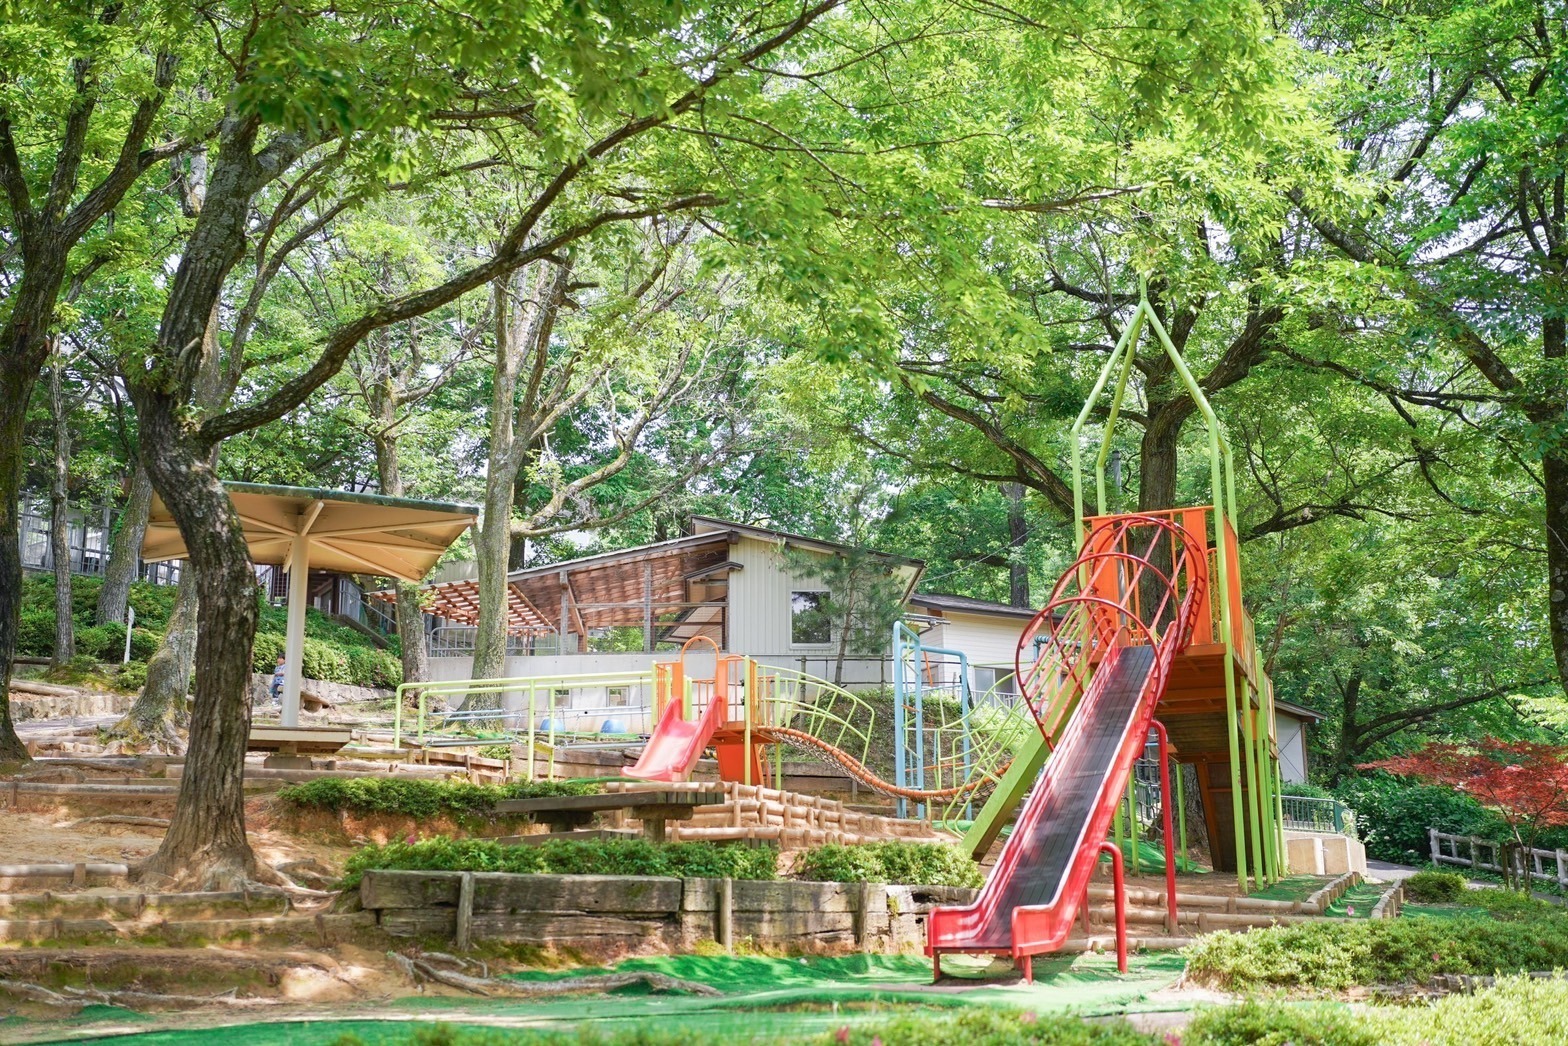 無料で楽しめるミニ動物園ハピジャンとアスレチックが融合した公園「足羽山公園遊園地」